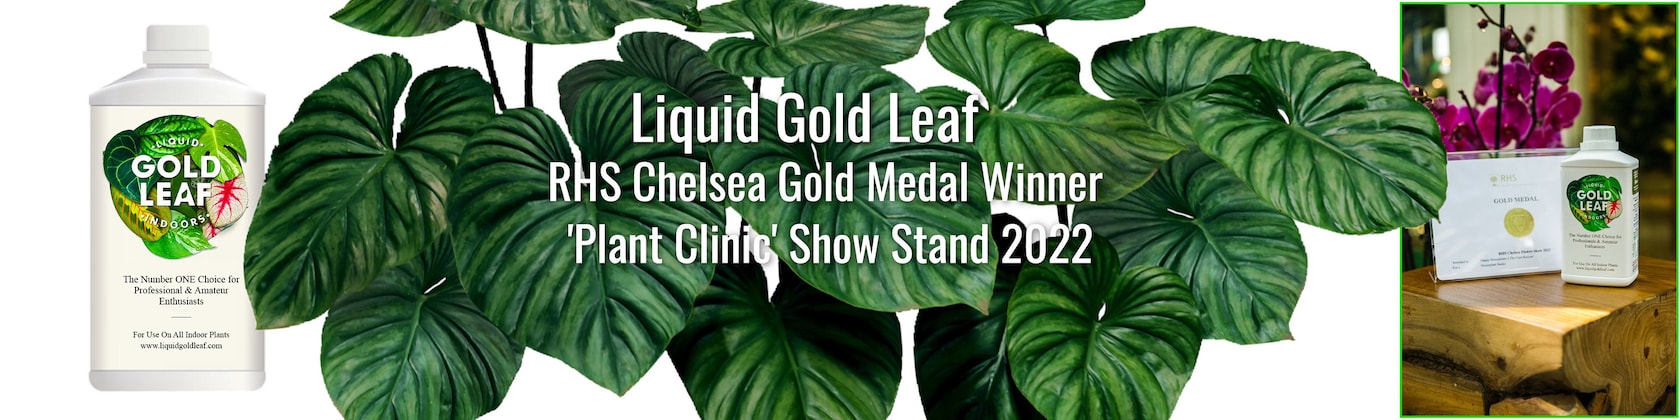 Liquid Gold Leaf Plant Feed 500ml